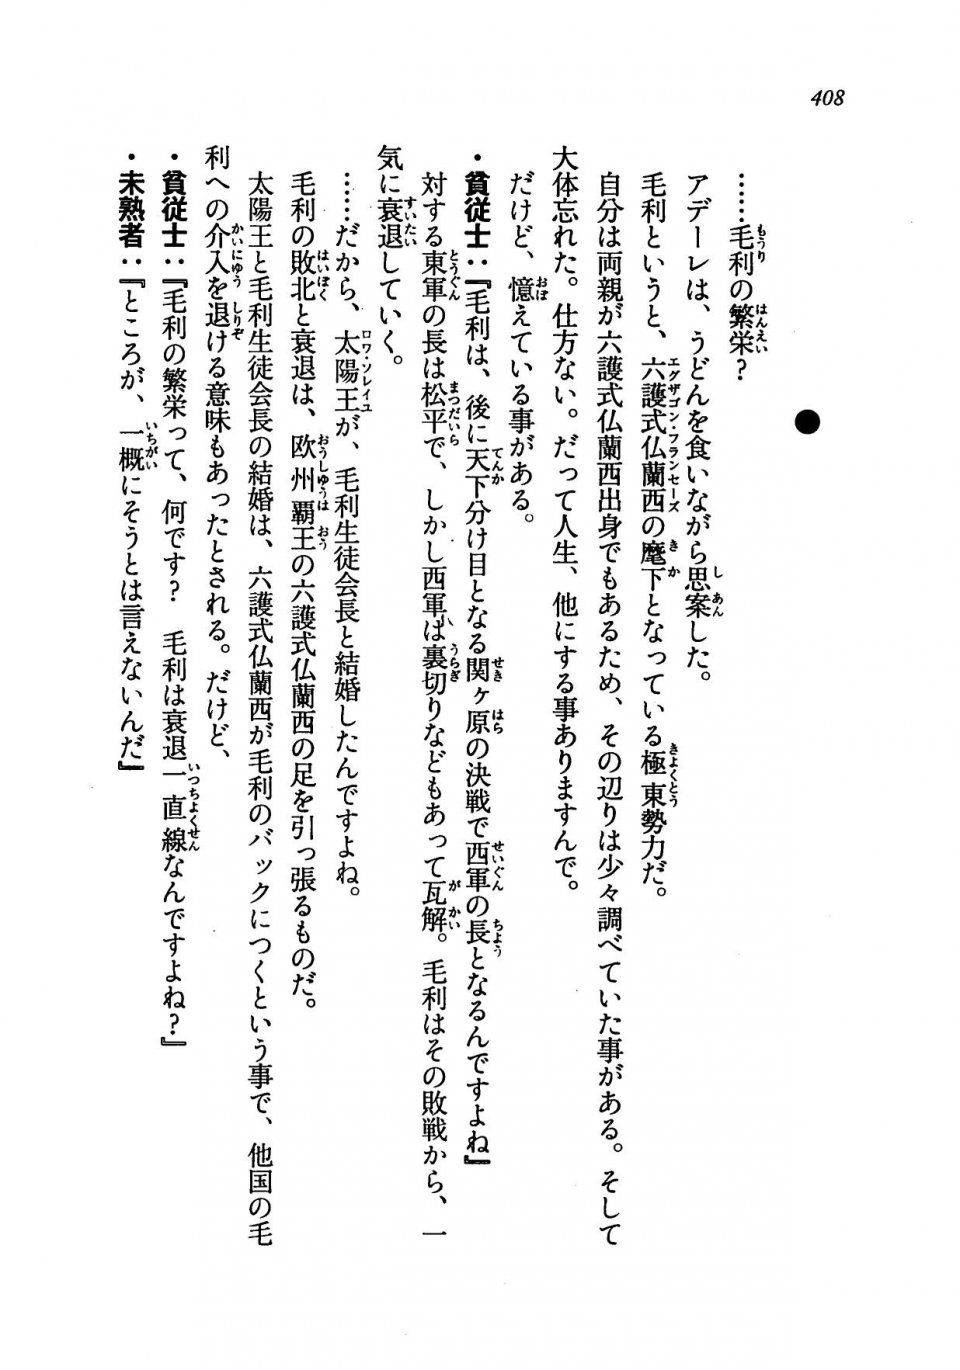 Kyoukai Senjou no Horizon LN Vol 19(8A) - Photo #408